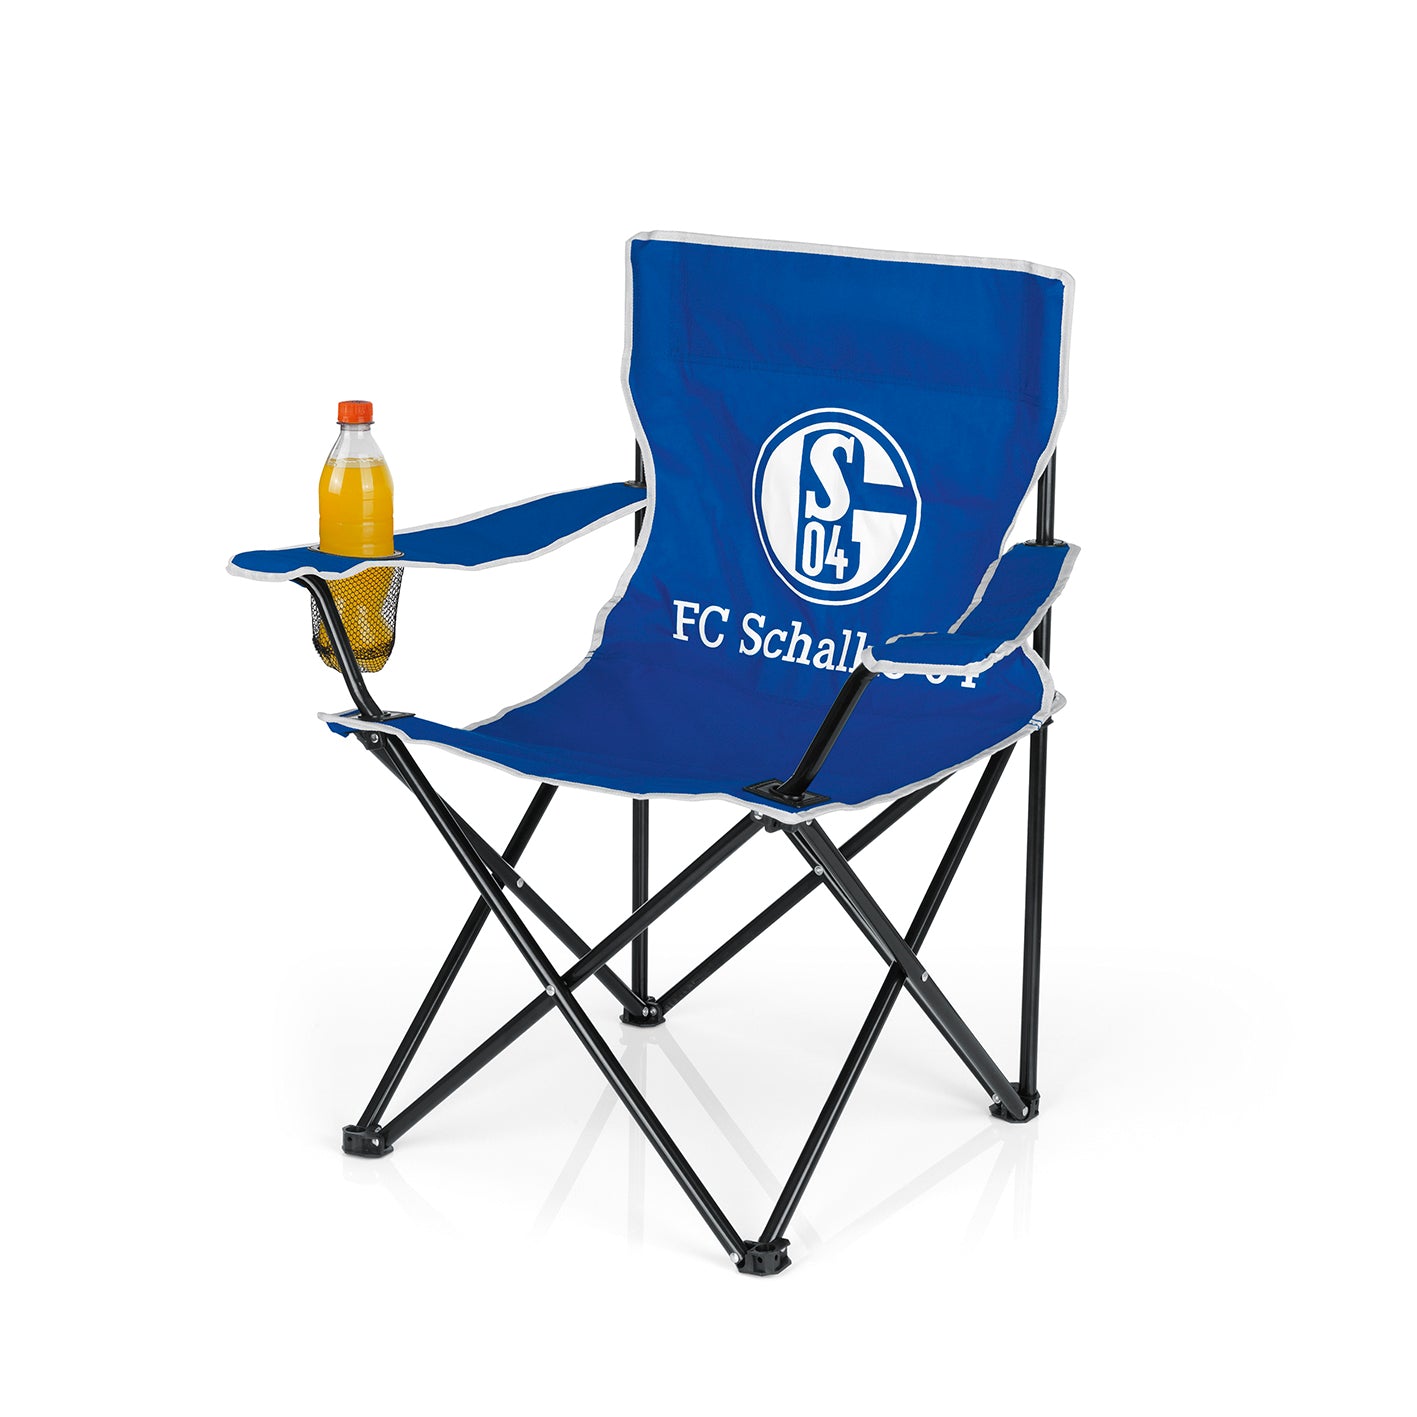 Campingstuhl faltbar mit Logo - 80x50 cm - weiß/blau von FC Schalke 04